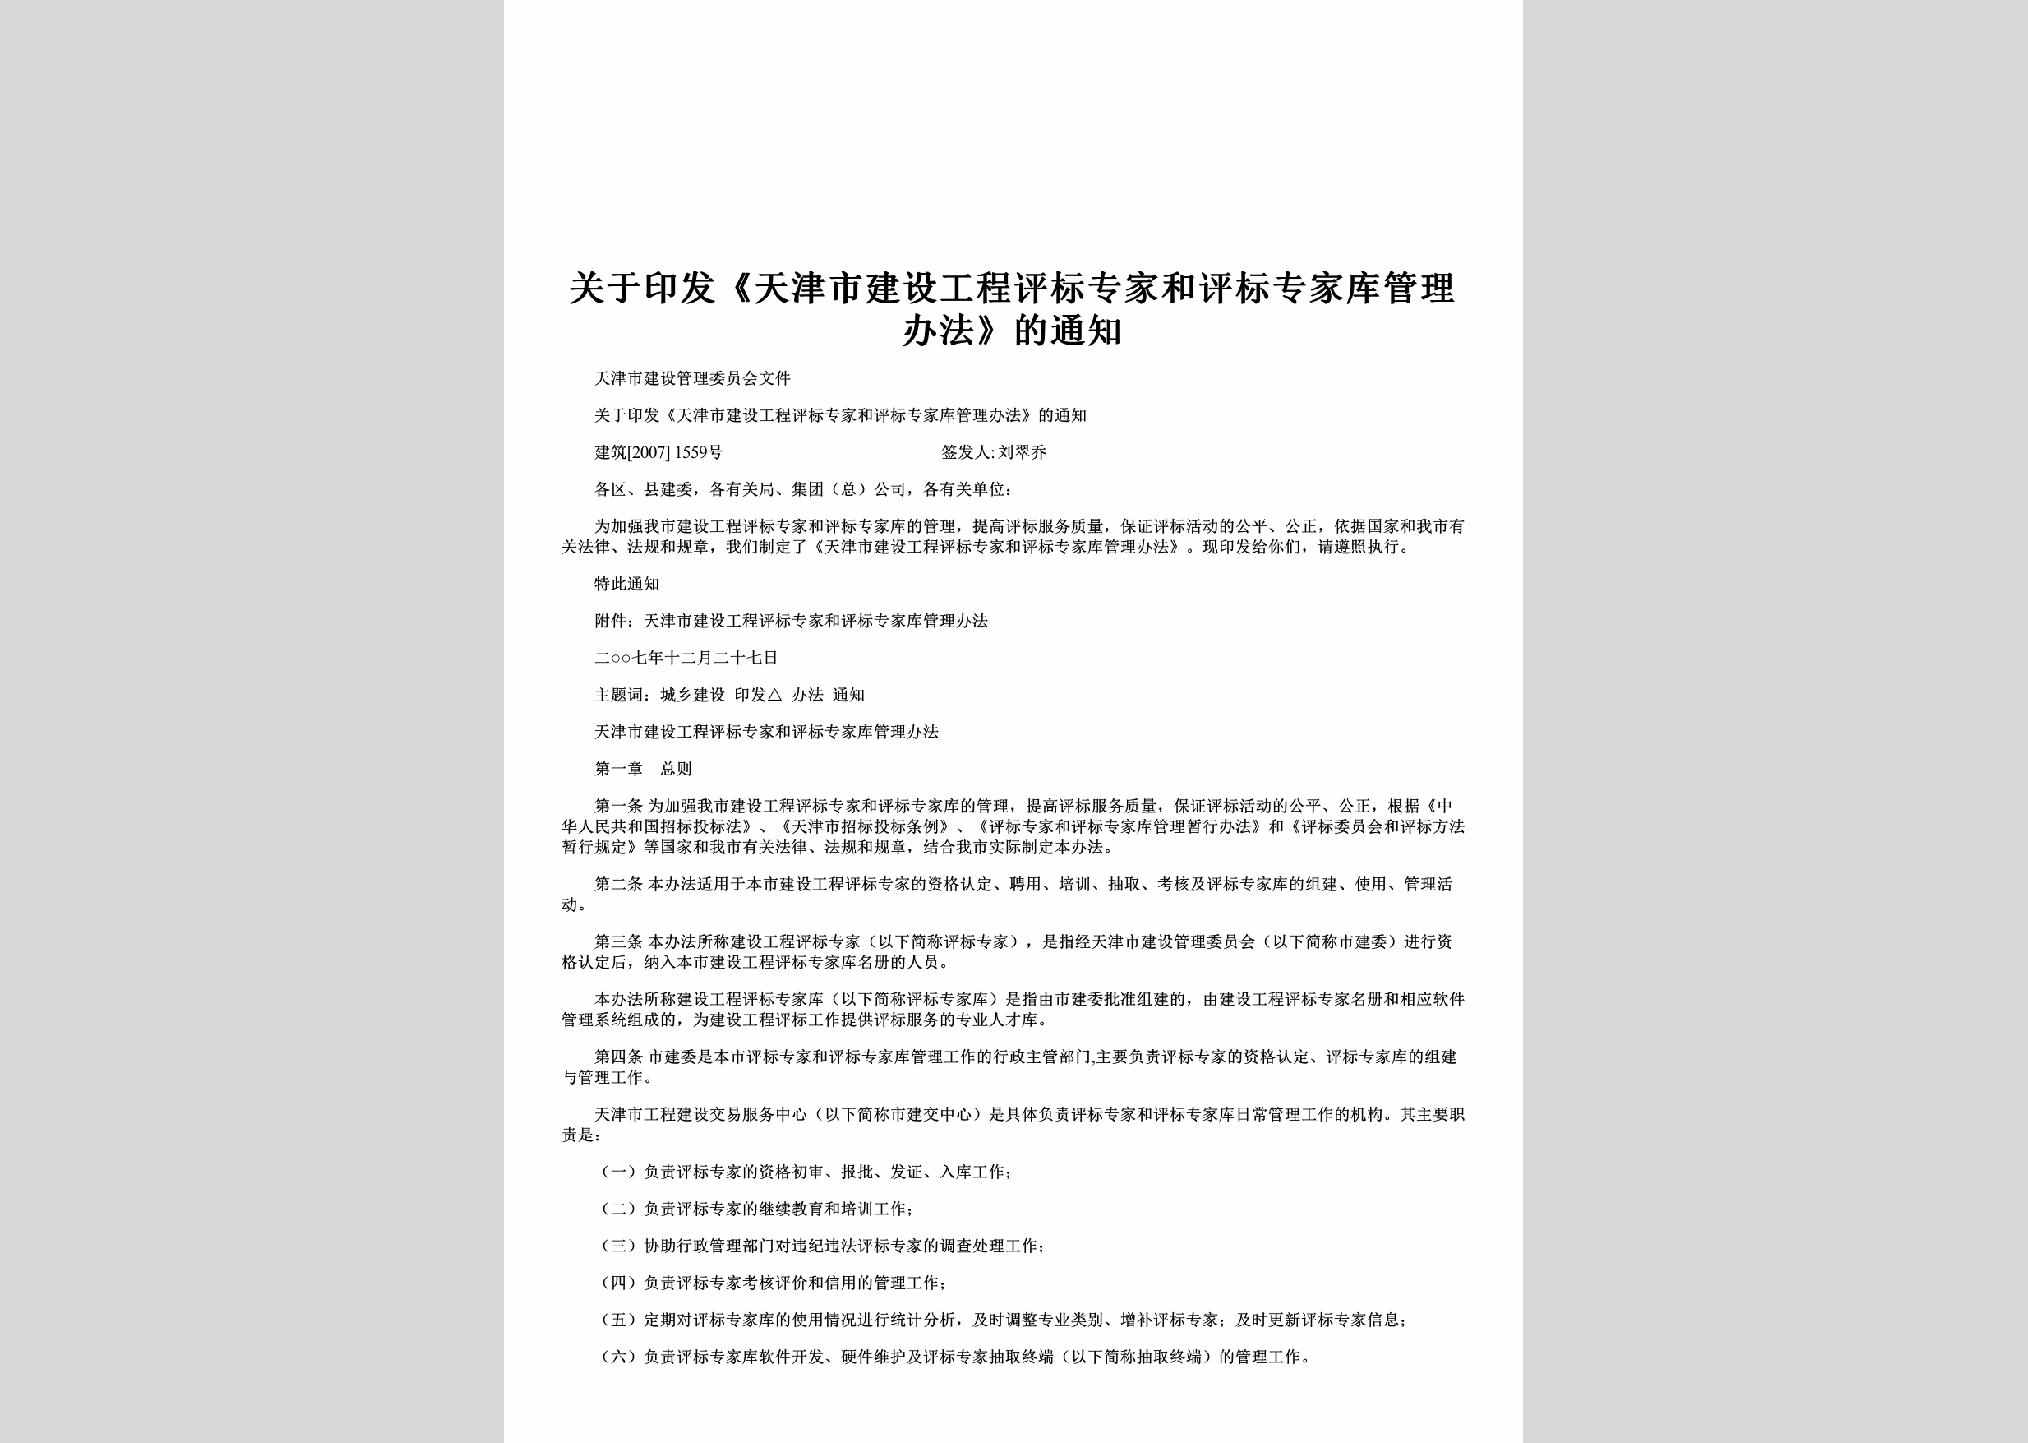 建筑[2007]1559号：关于印发《天津市建设工程评标专家和评标专家库管理办法》的通知